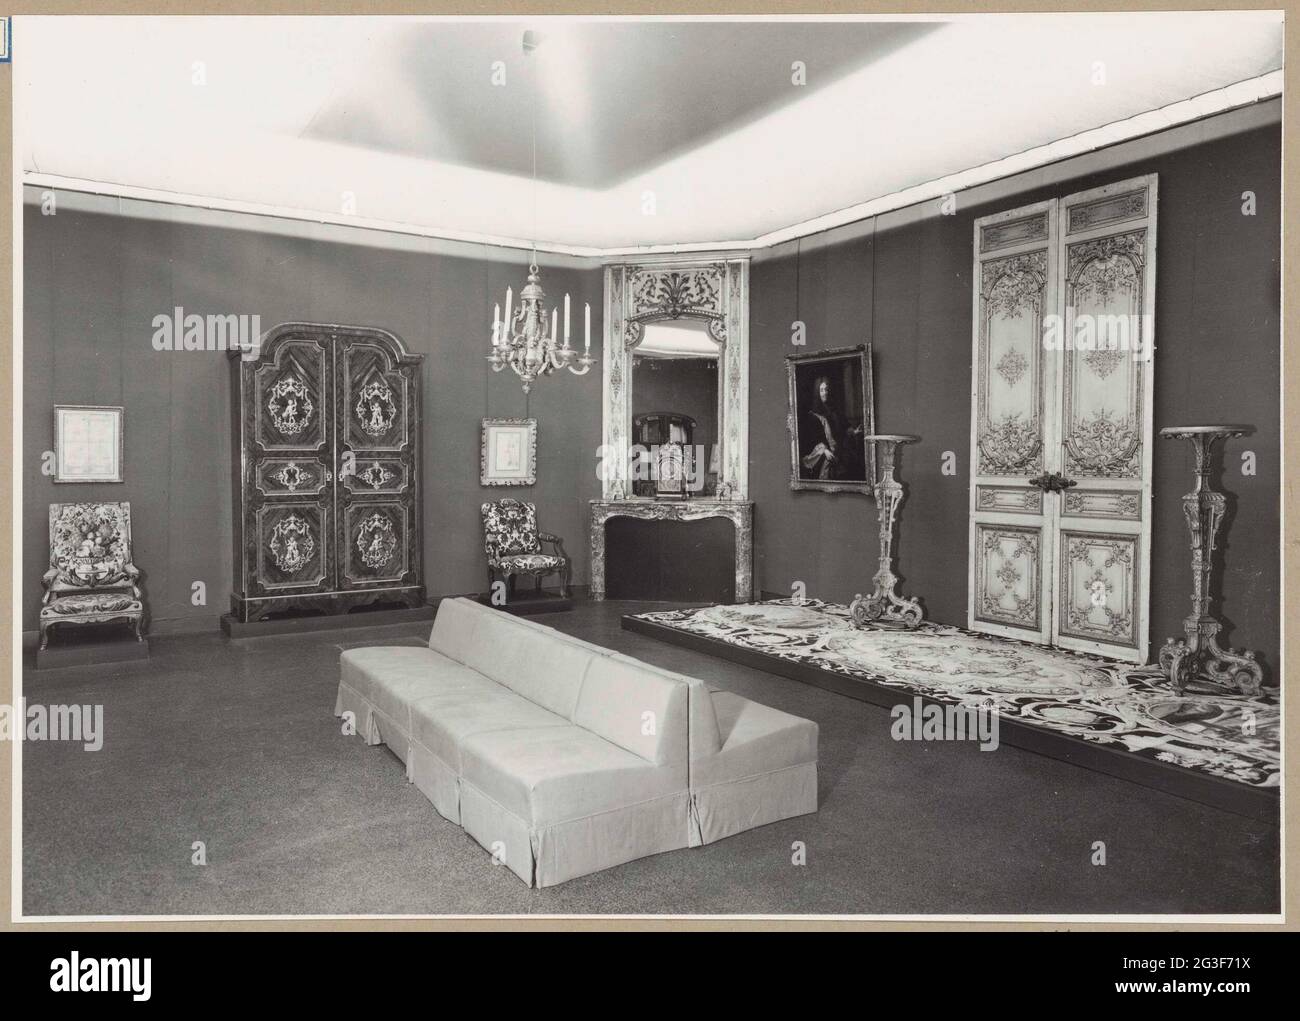 Angolo di una stanza con uno specchio, una porta doppia, mobili e una banca  per i visitatori; Mostra di Gotico a Impero: Capolavori francesi dal Musée  des Arts Décoratifs a Parigi. Tra